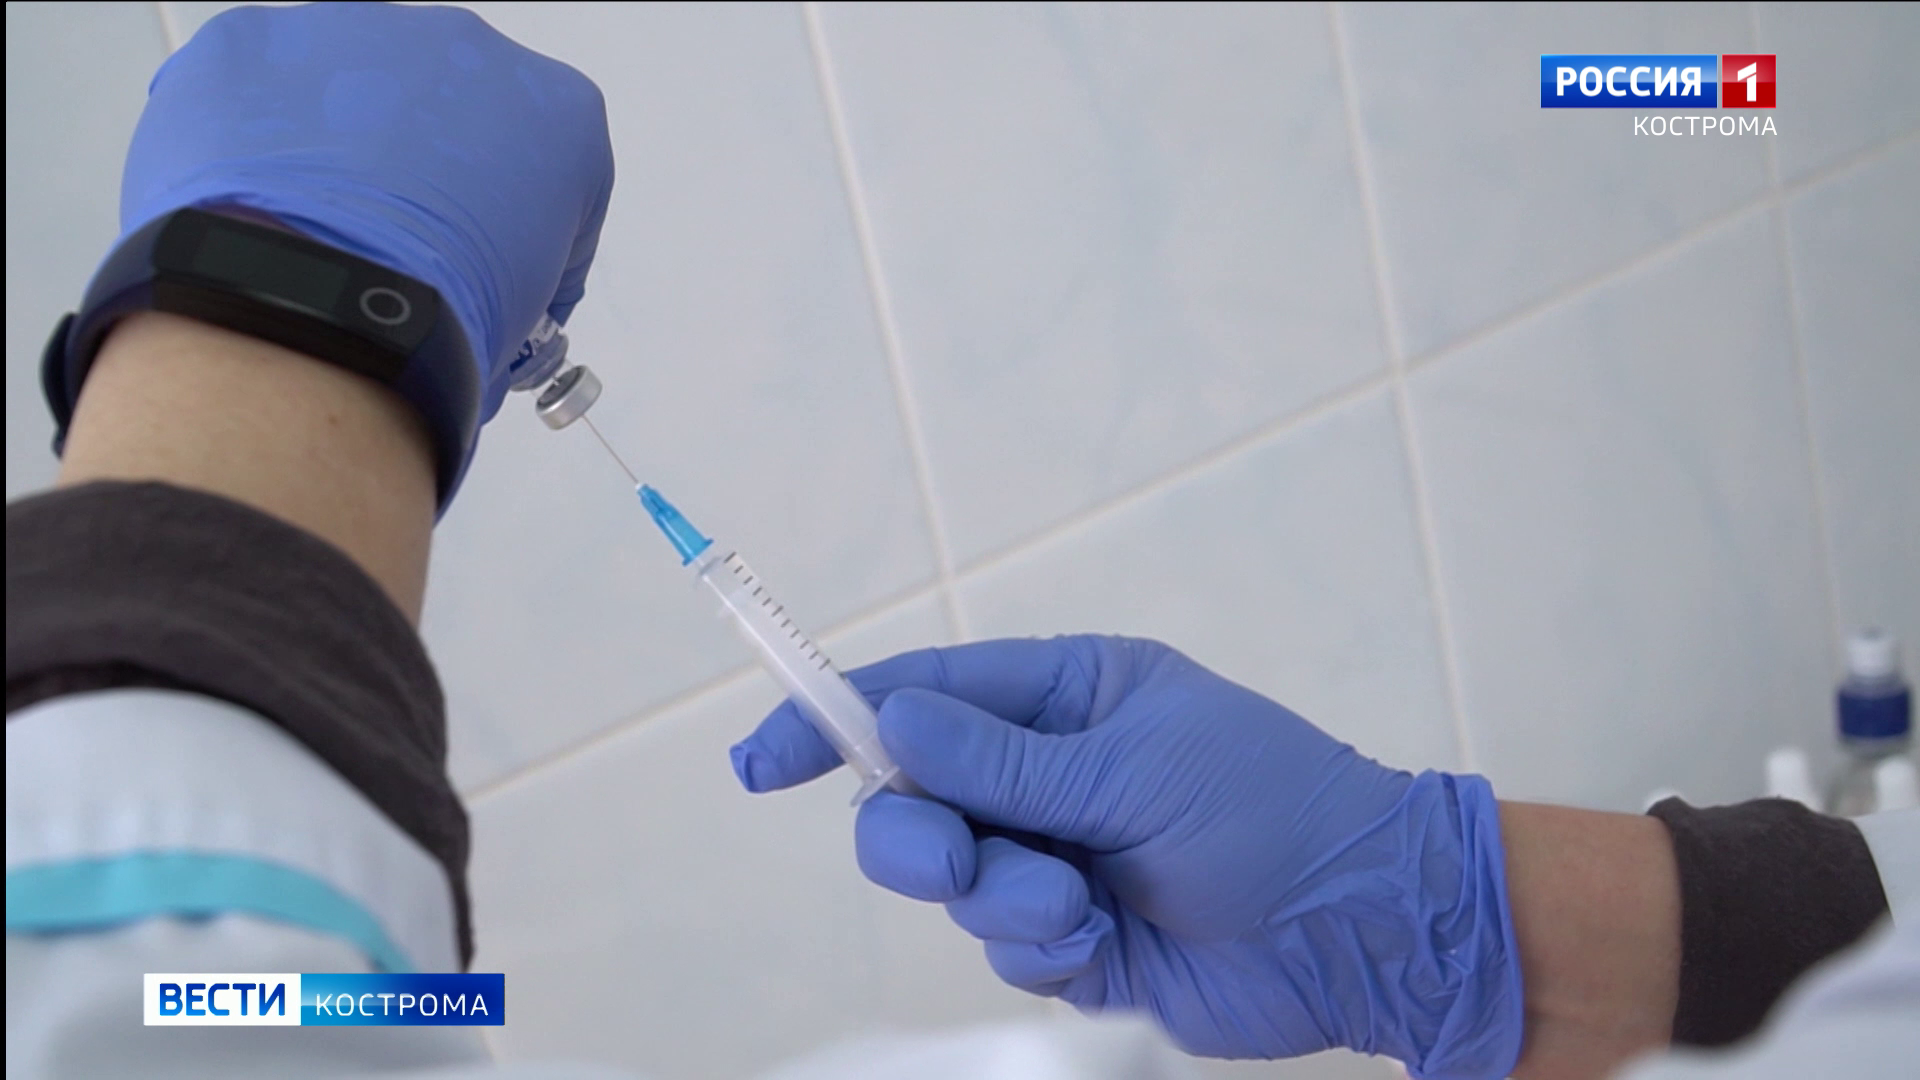 Новая партия вакцины от коронавируса прибыла в Кострому